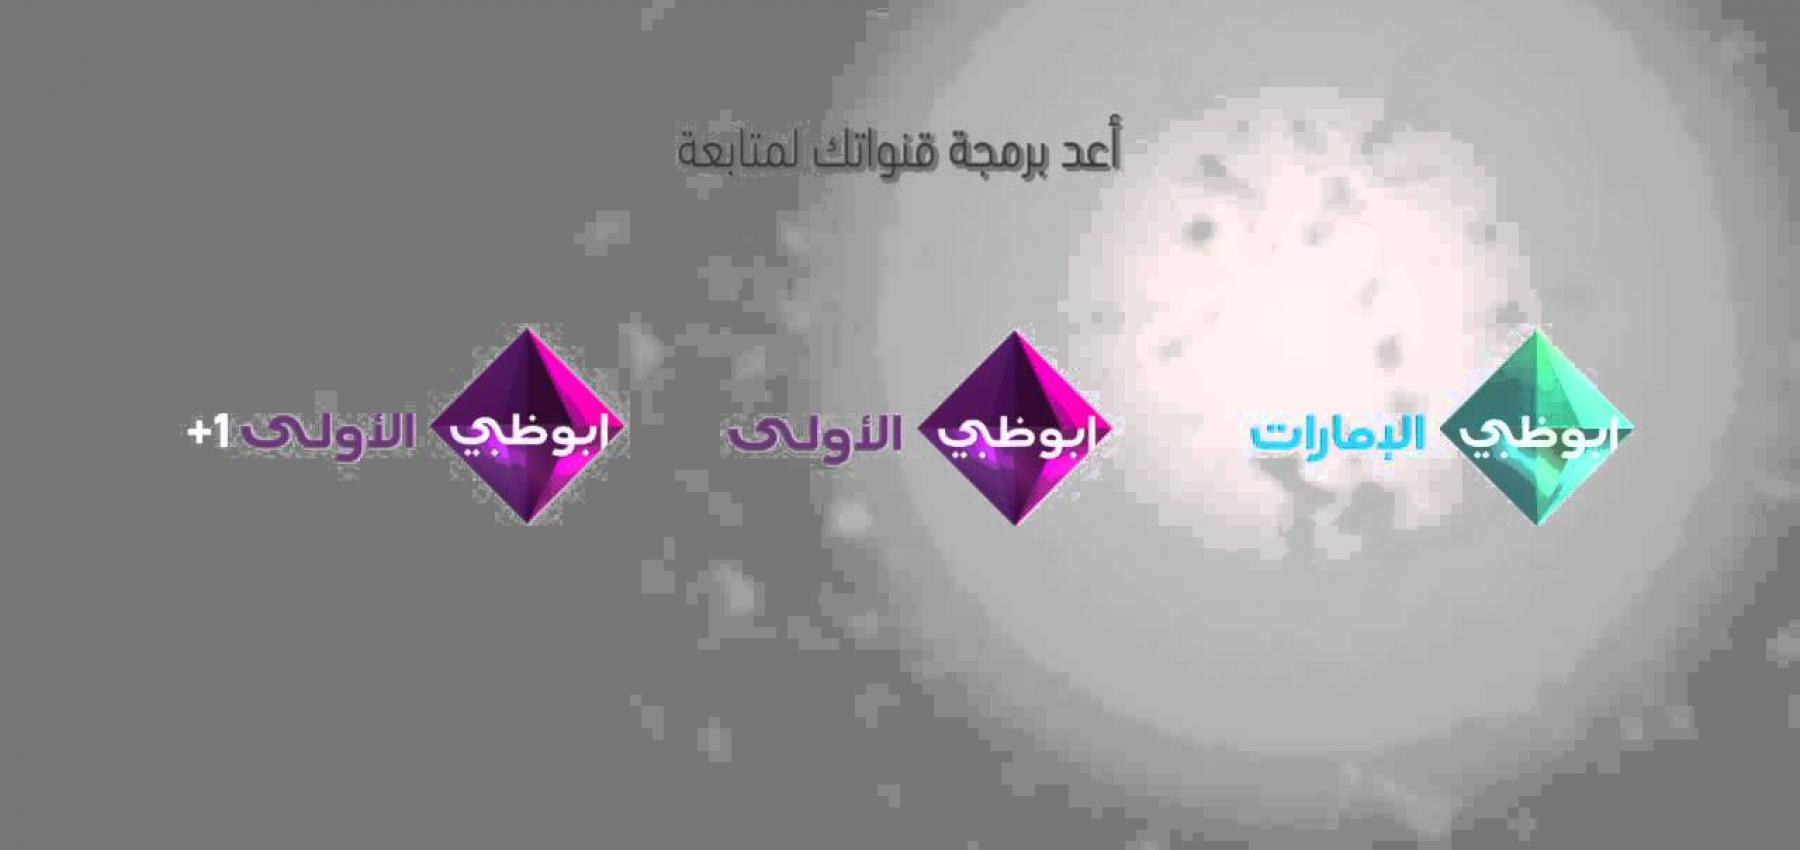 باقة متنوعة من البرامج والمسلسلات على تلفزيون أبوظبي وتطبيق adtv حلوة